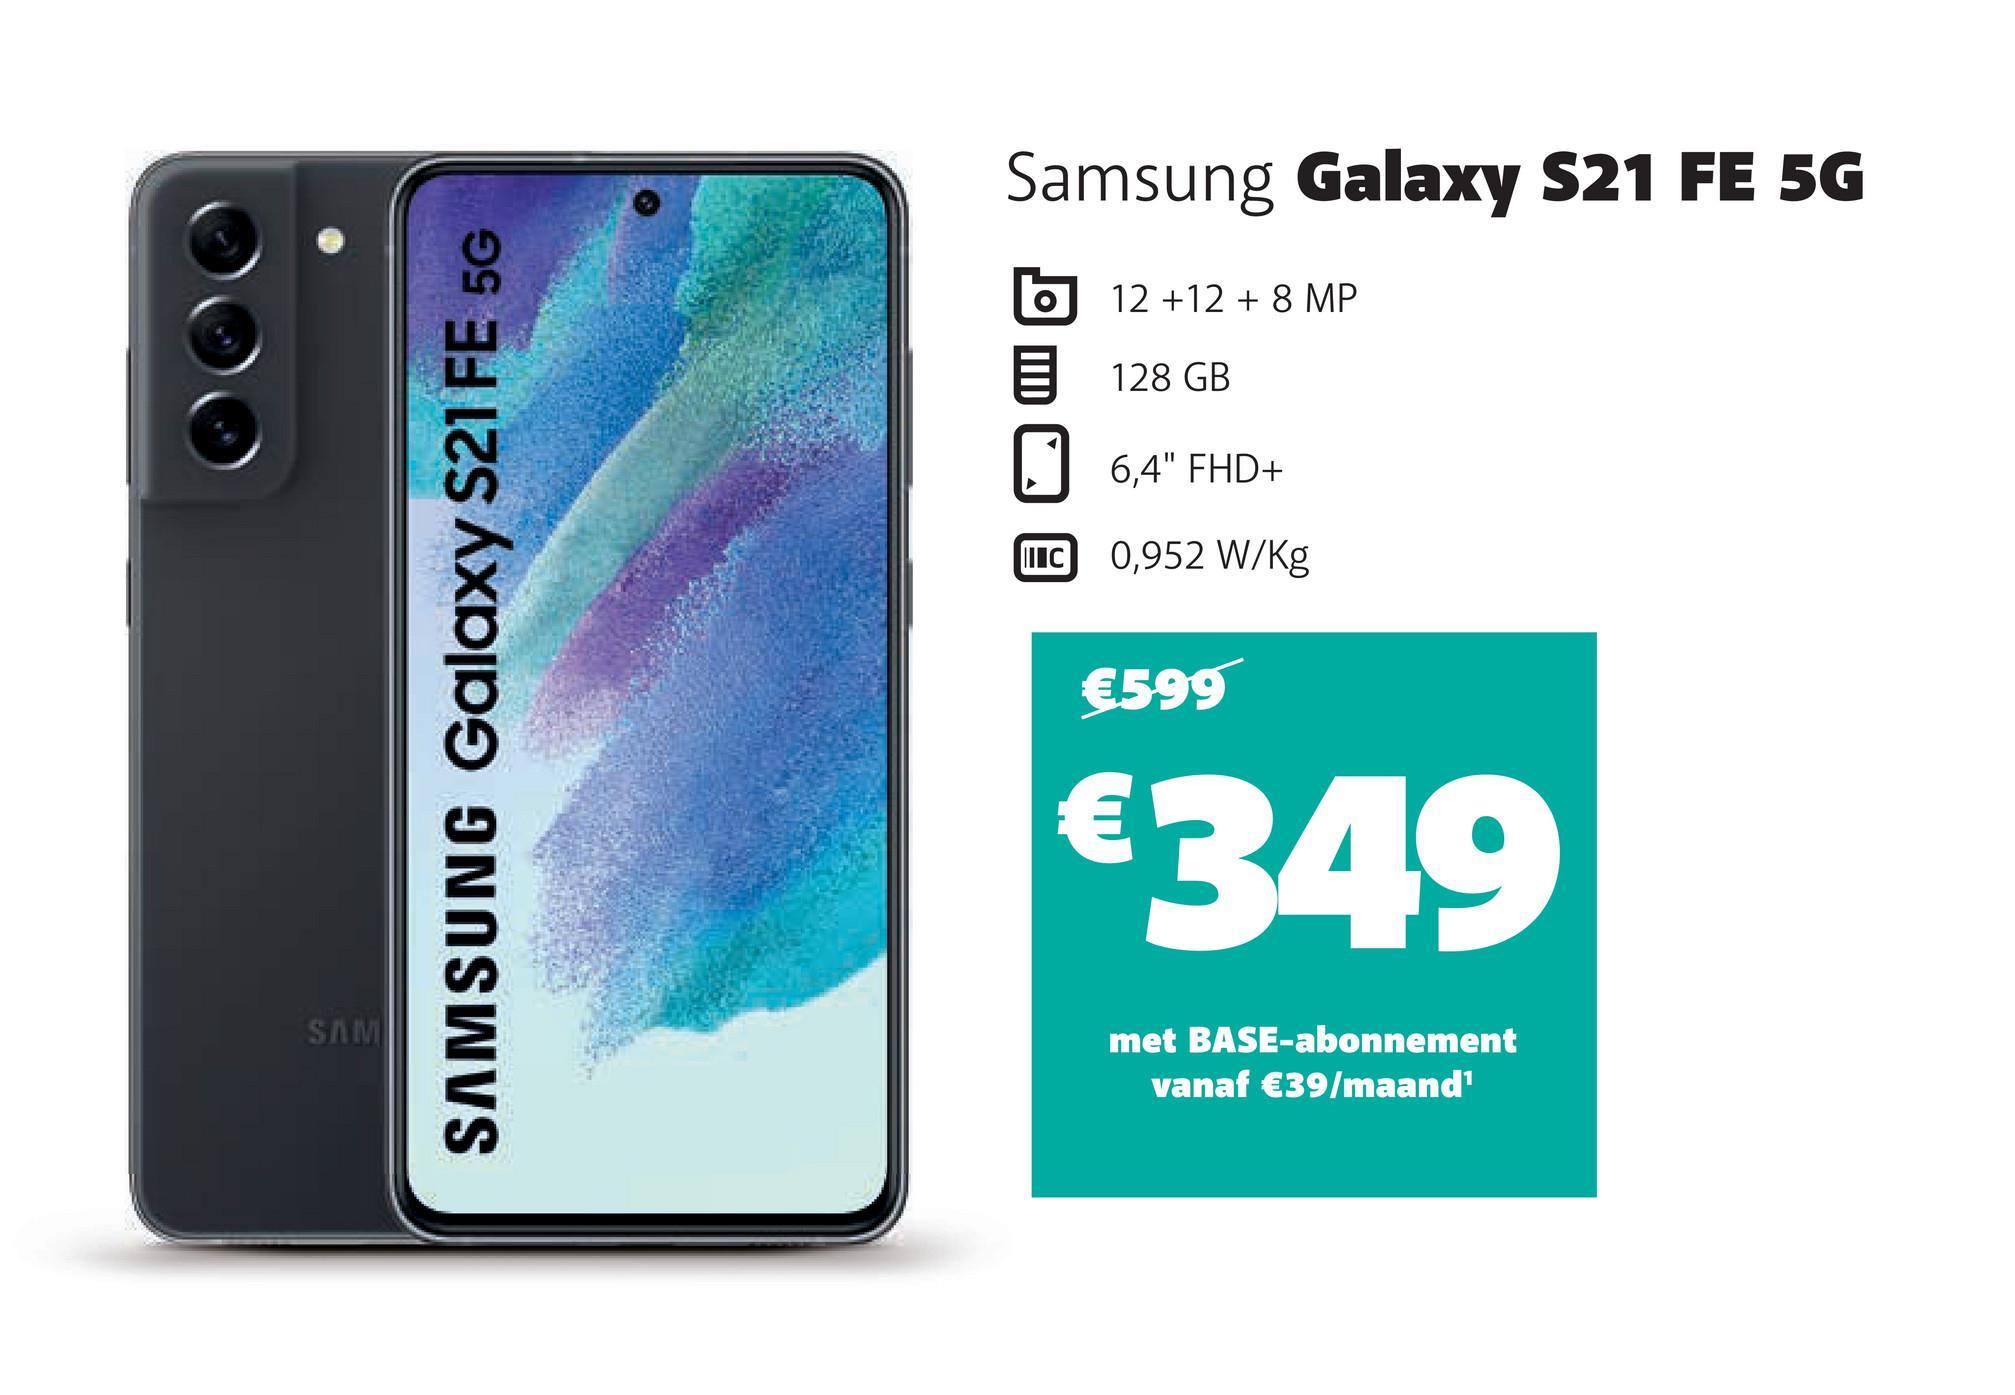 SAM
SAMSUNG Galaxy S21 FE 5G
Samsung Galaxy S21 FE 5G
12 +12 + 8 MP
128 GB
6,4" FHD+
IC 0,952 W/kg
€599
€349
met BASE-abonnement
vanaf €39/maand¹